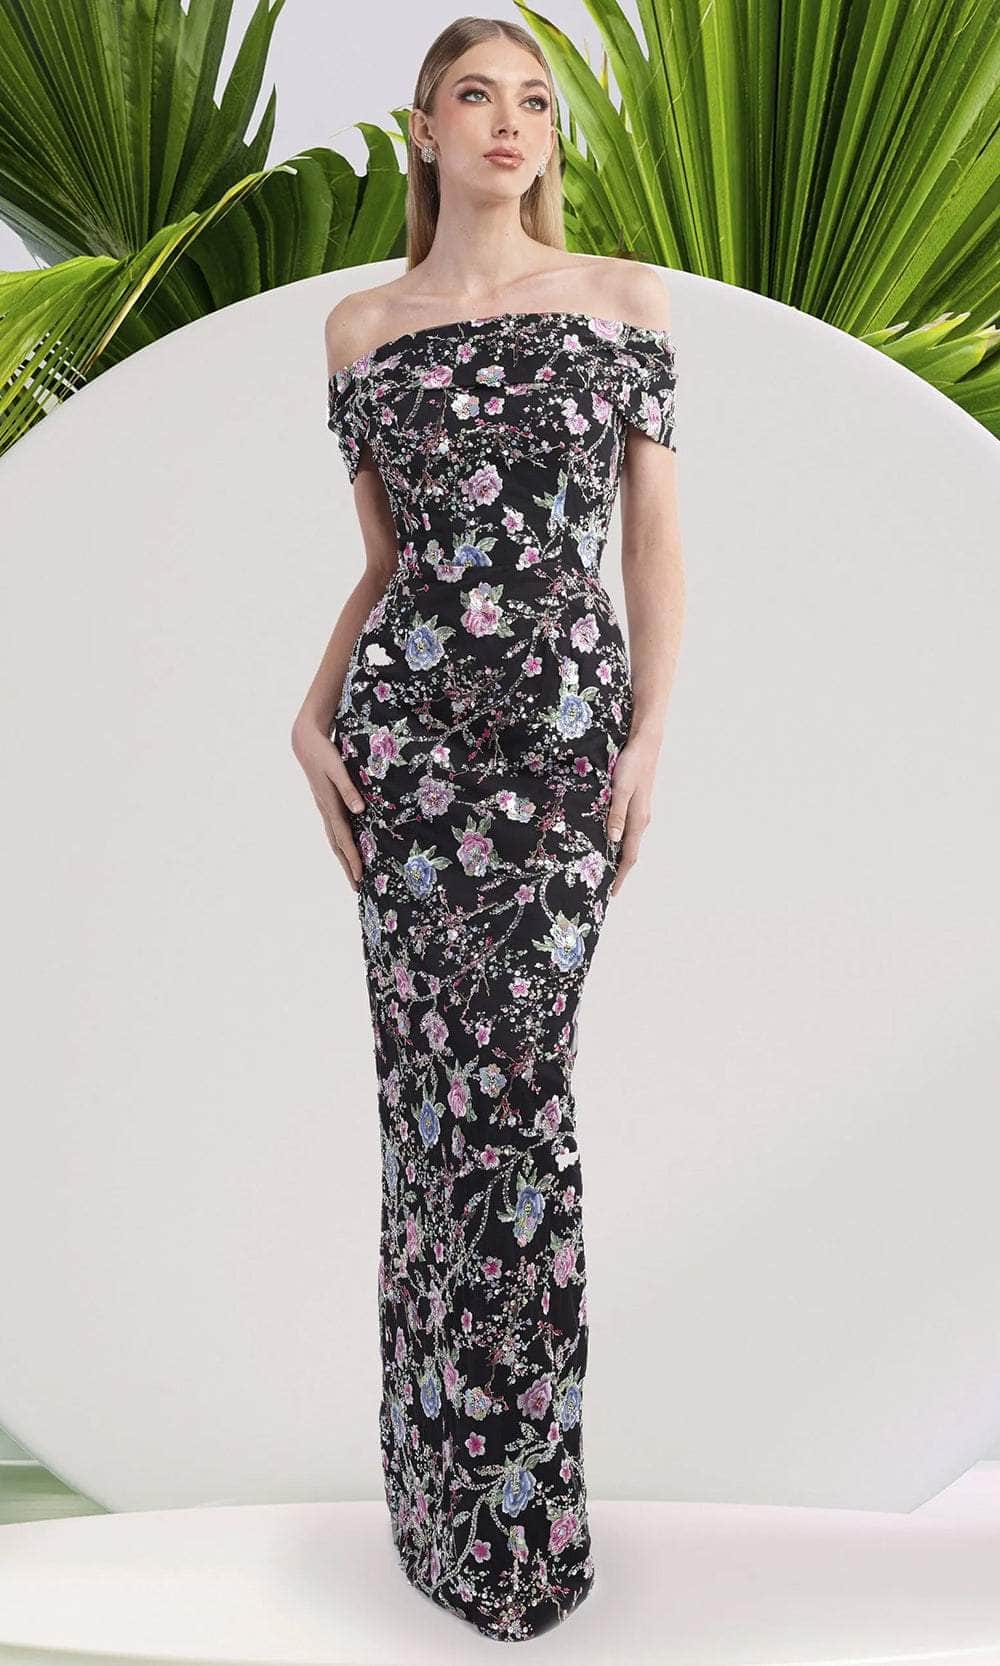 Janique 2444 - Floral Print Sheath Long Dress
